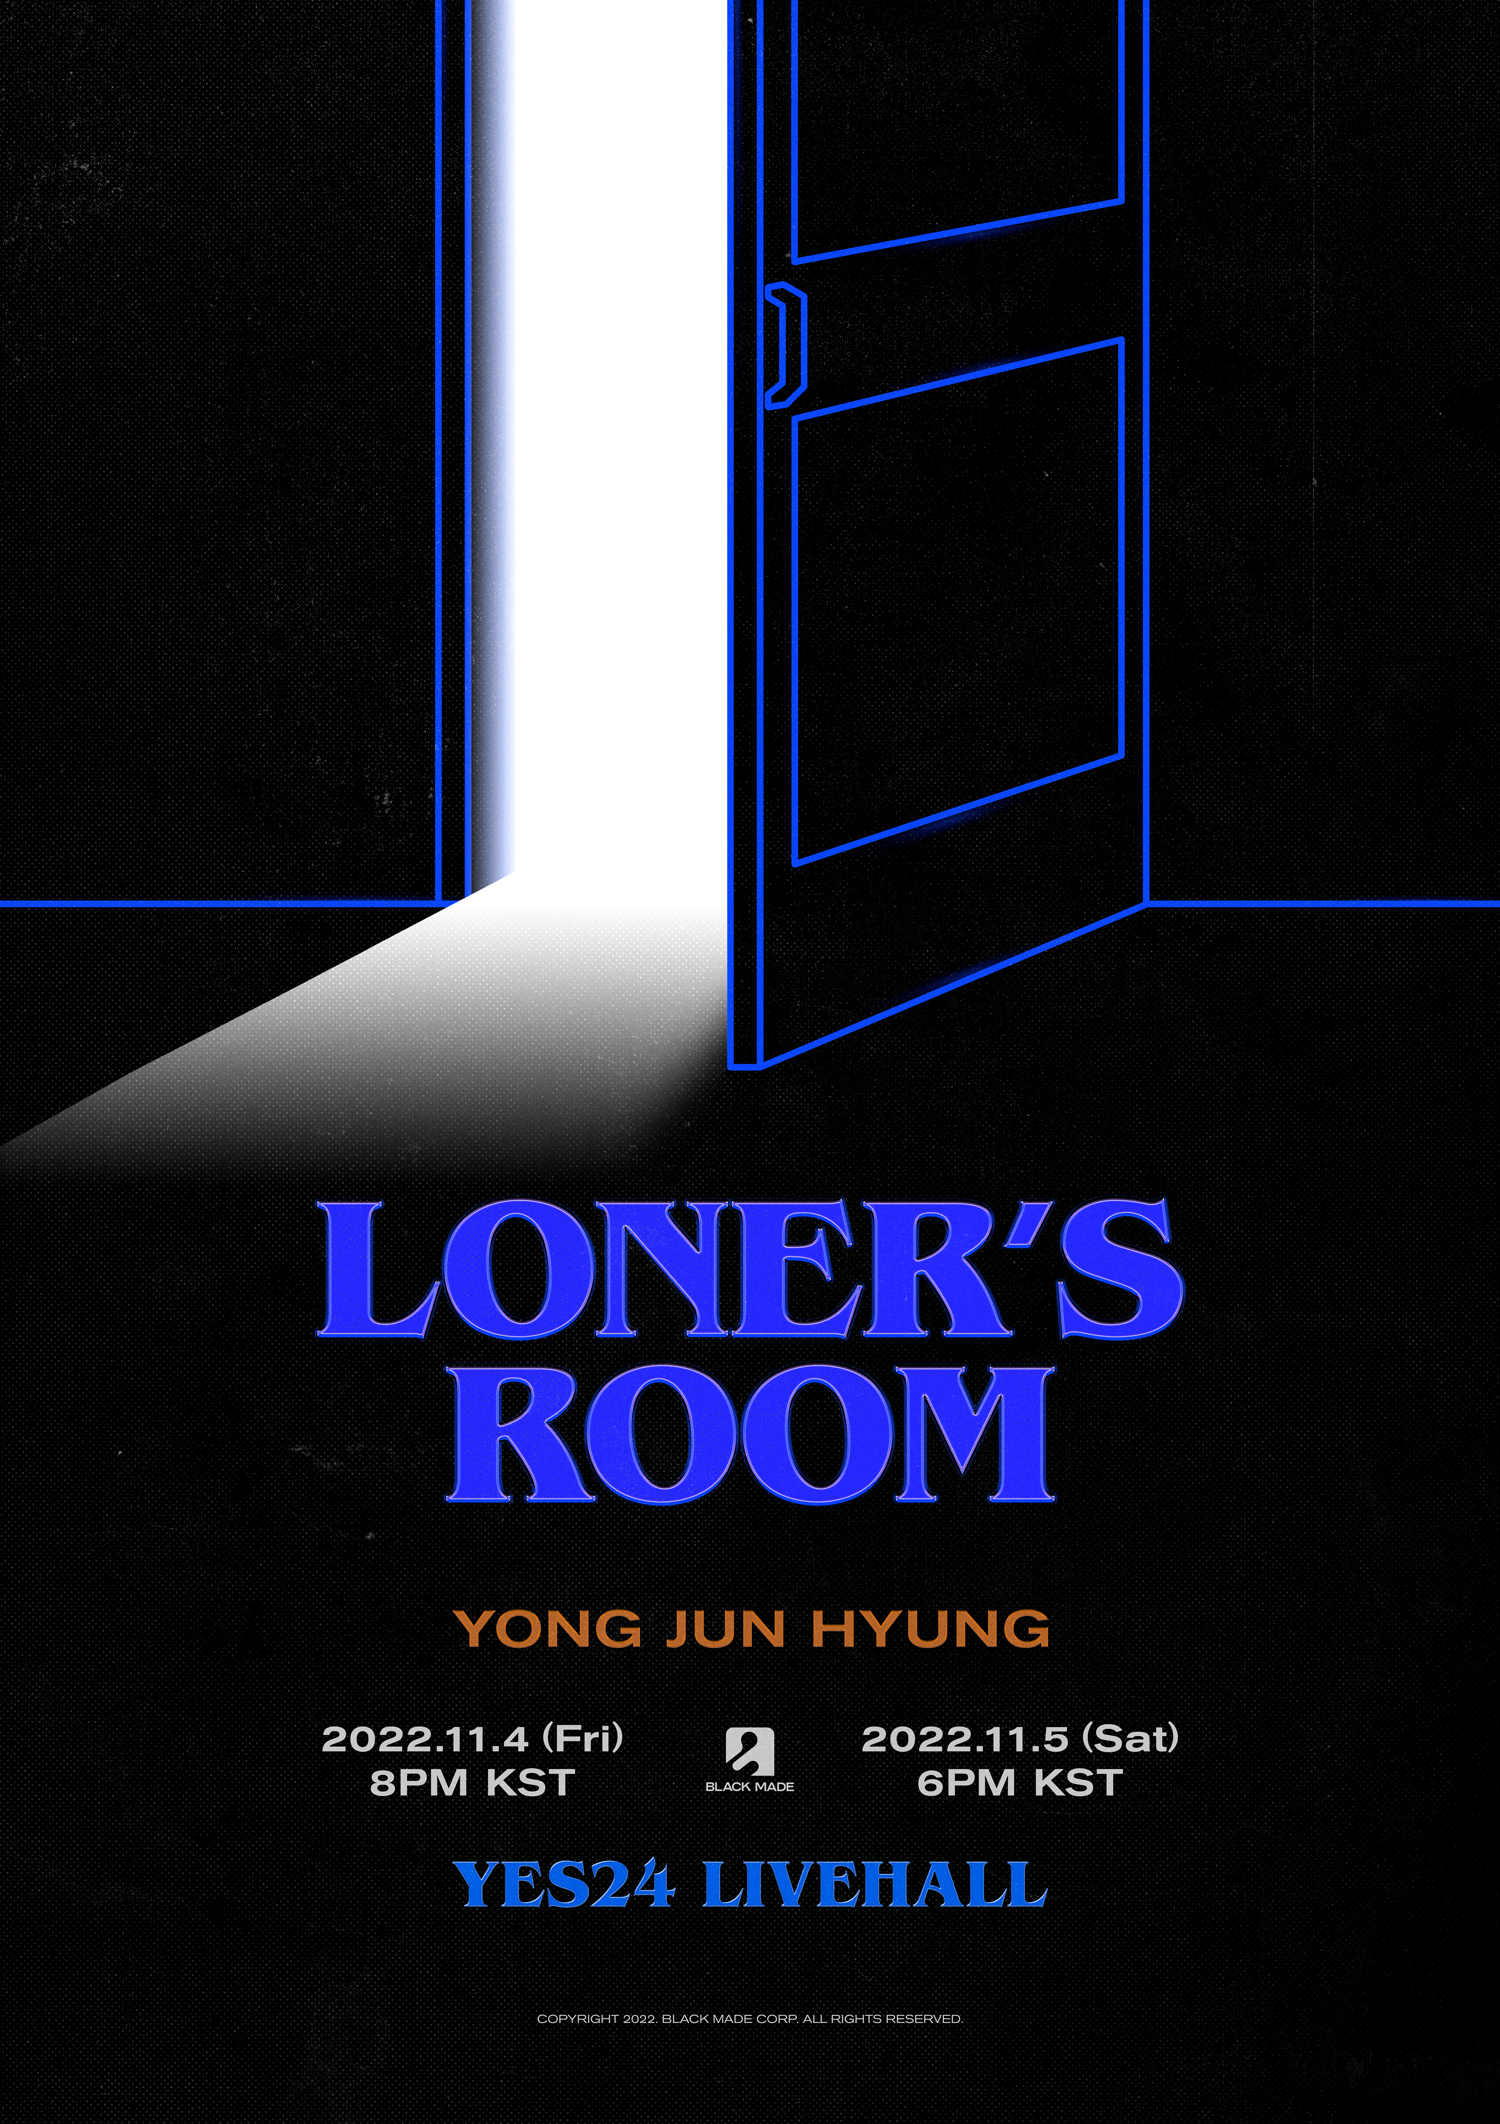 용준형 단독 콘서트 ‘LONER’s ROOM’ 포스터.jpg